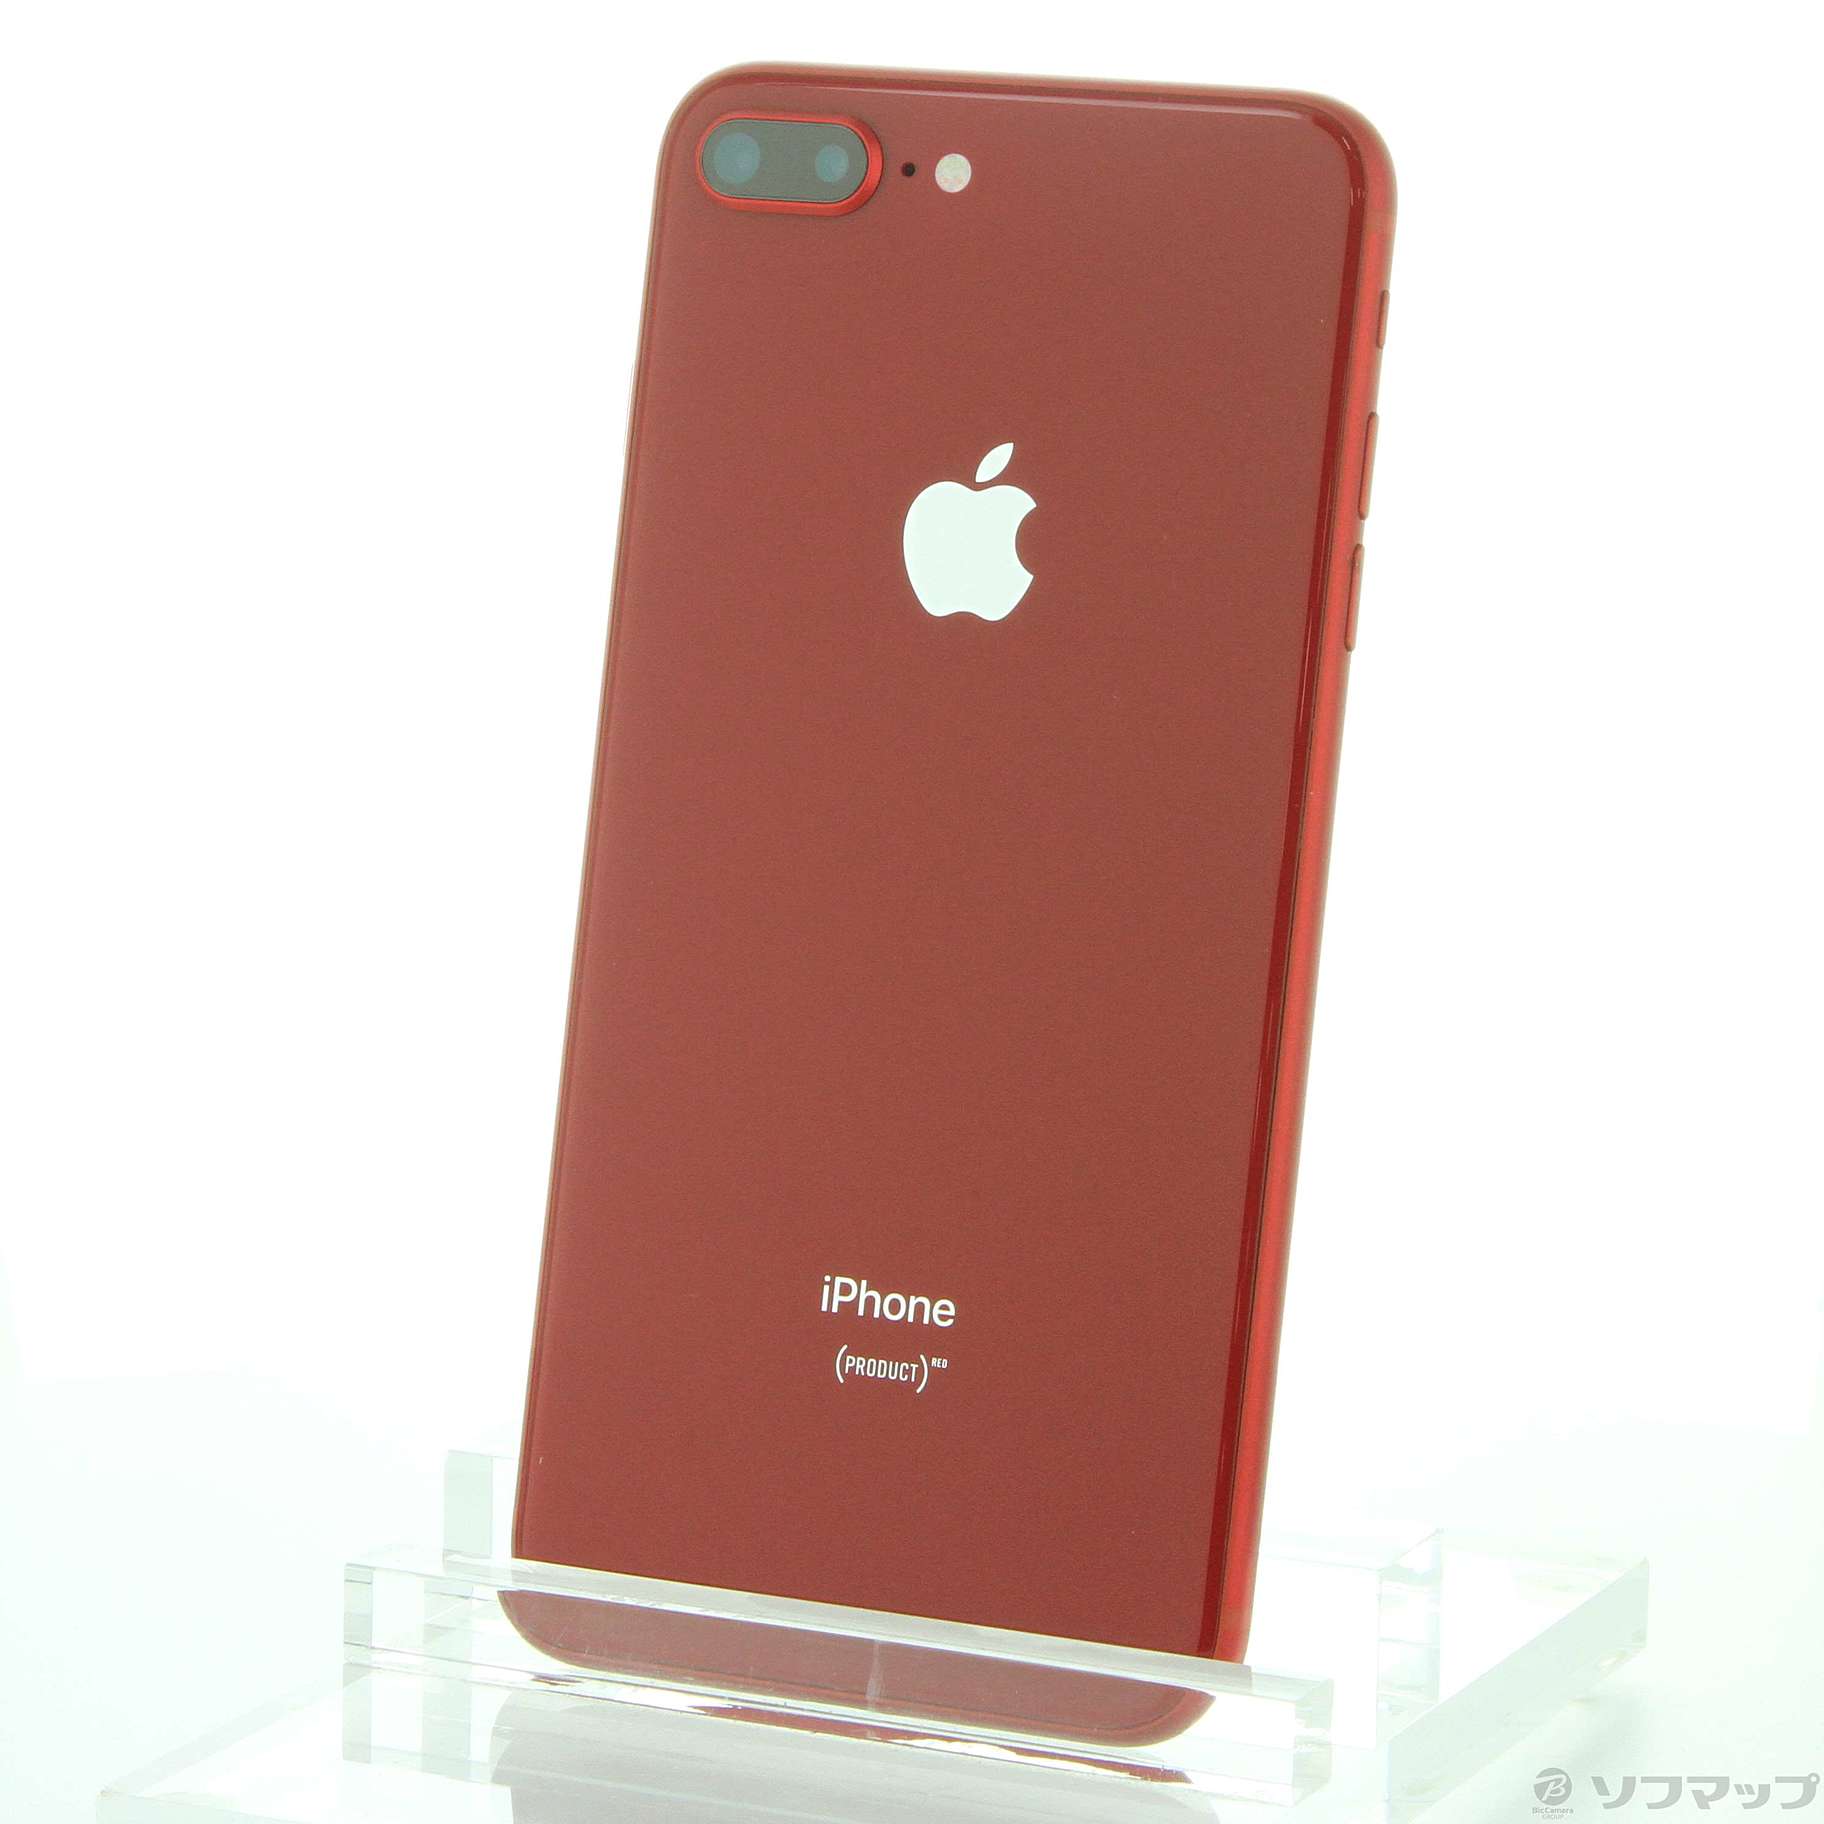 7,820円iPhone8 plus RED レッド 256GB